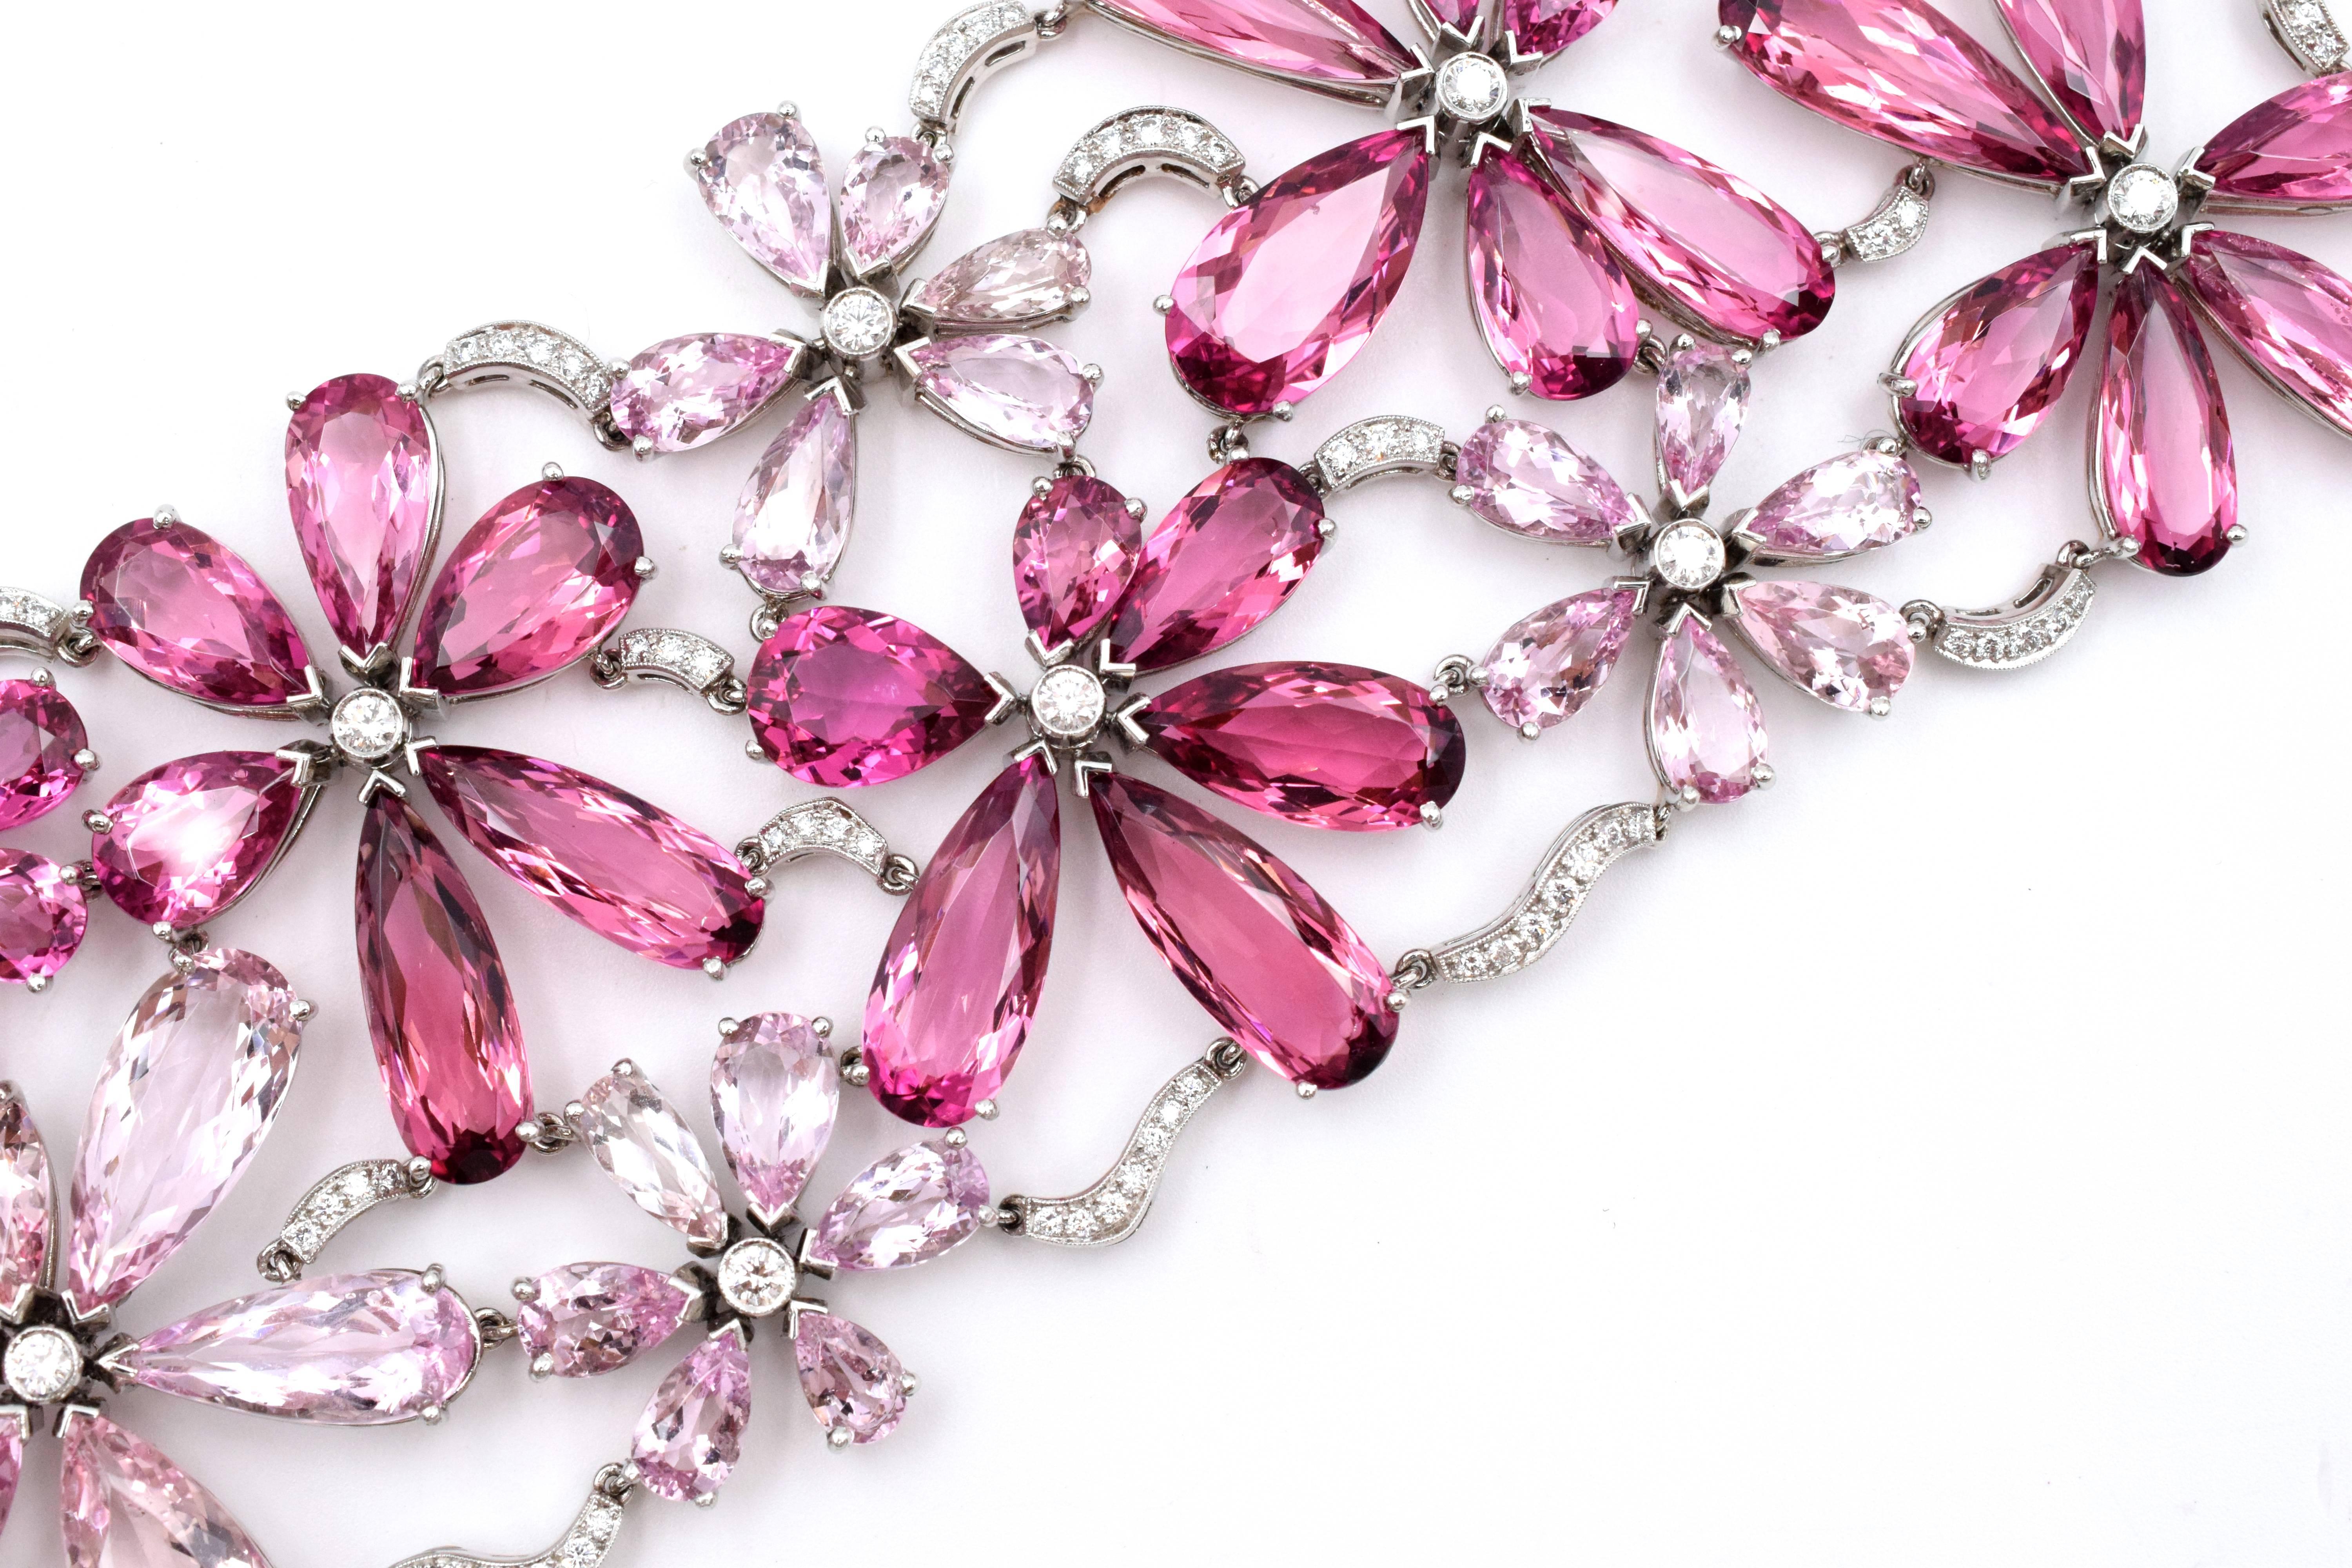 Rosa Turmalin, Morganit und Diamant Armband von Tiffany & Co mit buntem und floralem Design
Dieses Platin-Armband mit floralem Design hat 41 birnenförmige rosa Turmaline mit einem Gewicht von etwa 87 Karat, 42 birnenförmige Morganite mit einem